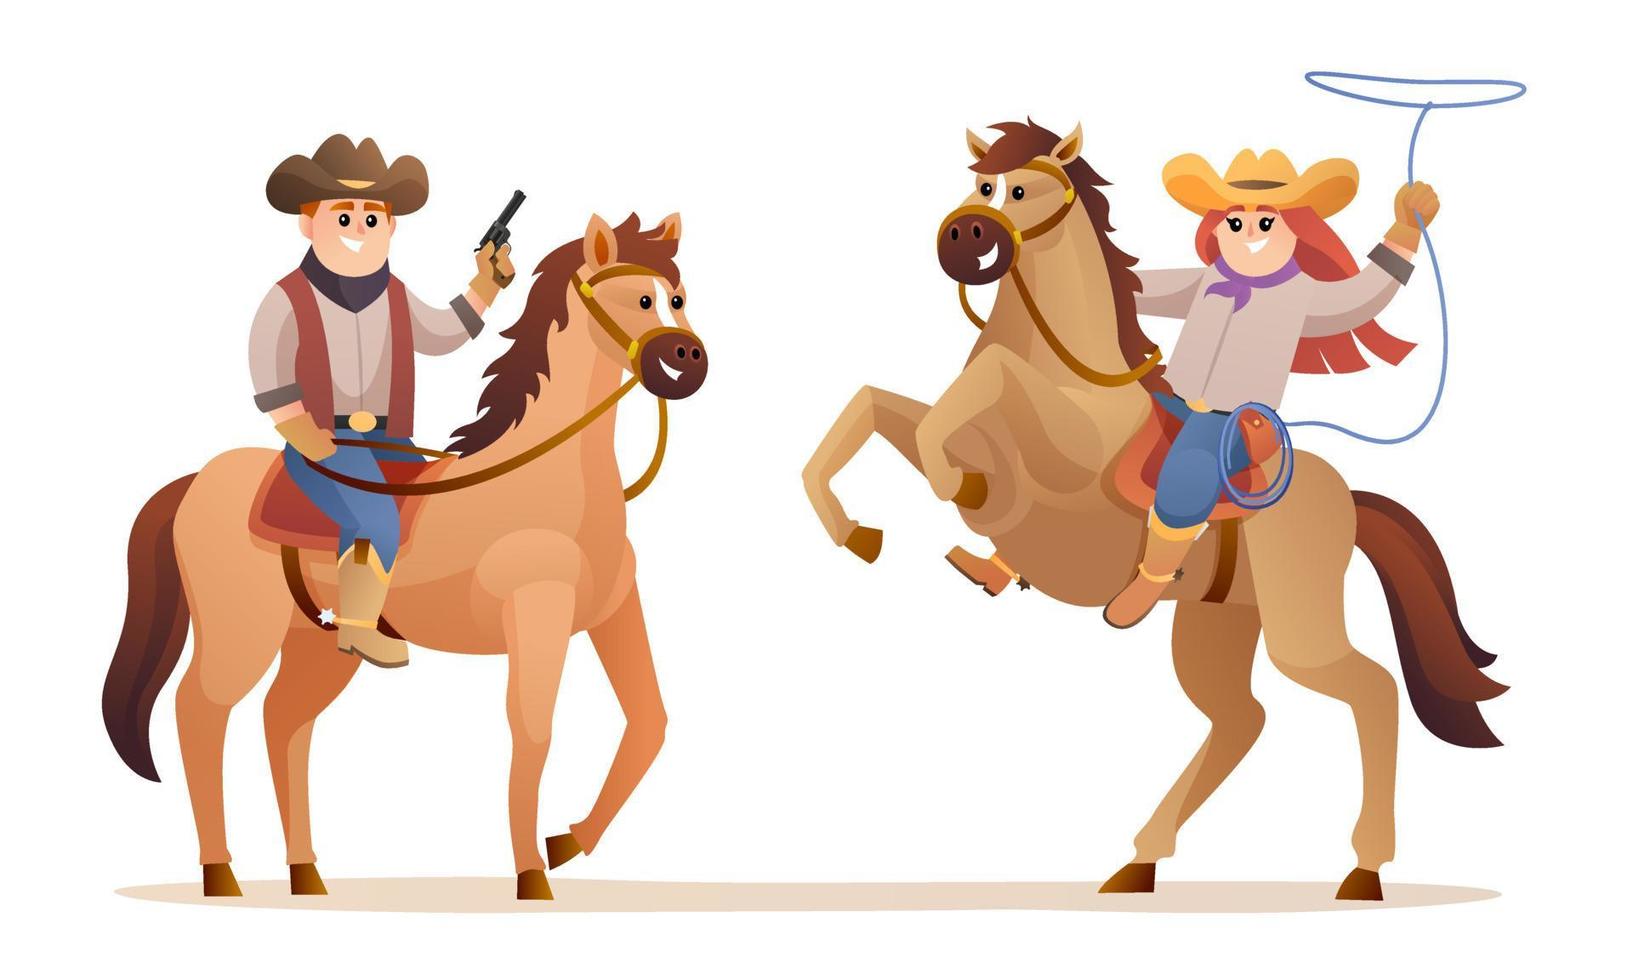 simpatici personaggi di cowboy e cowgirl a cavallo. illustrazione del concetto occidentale della fauna selvatica vettore